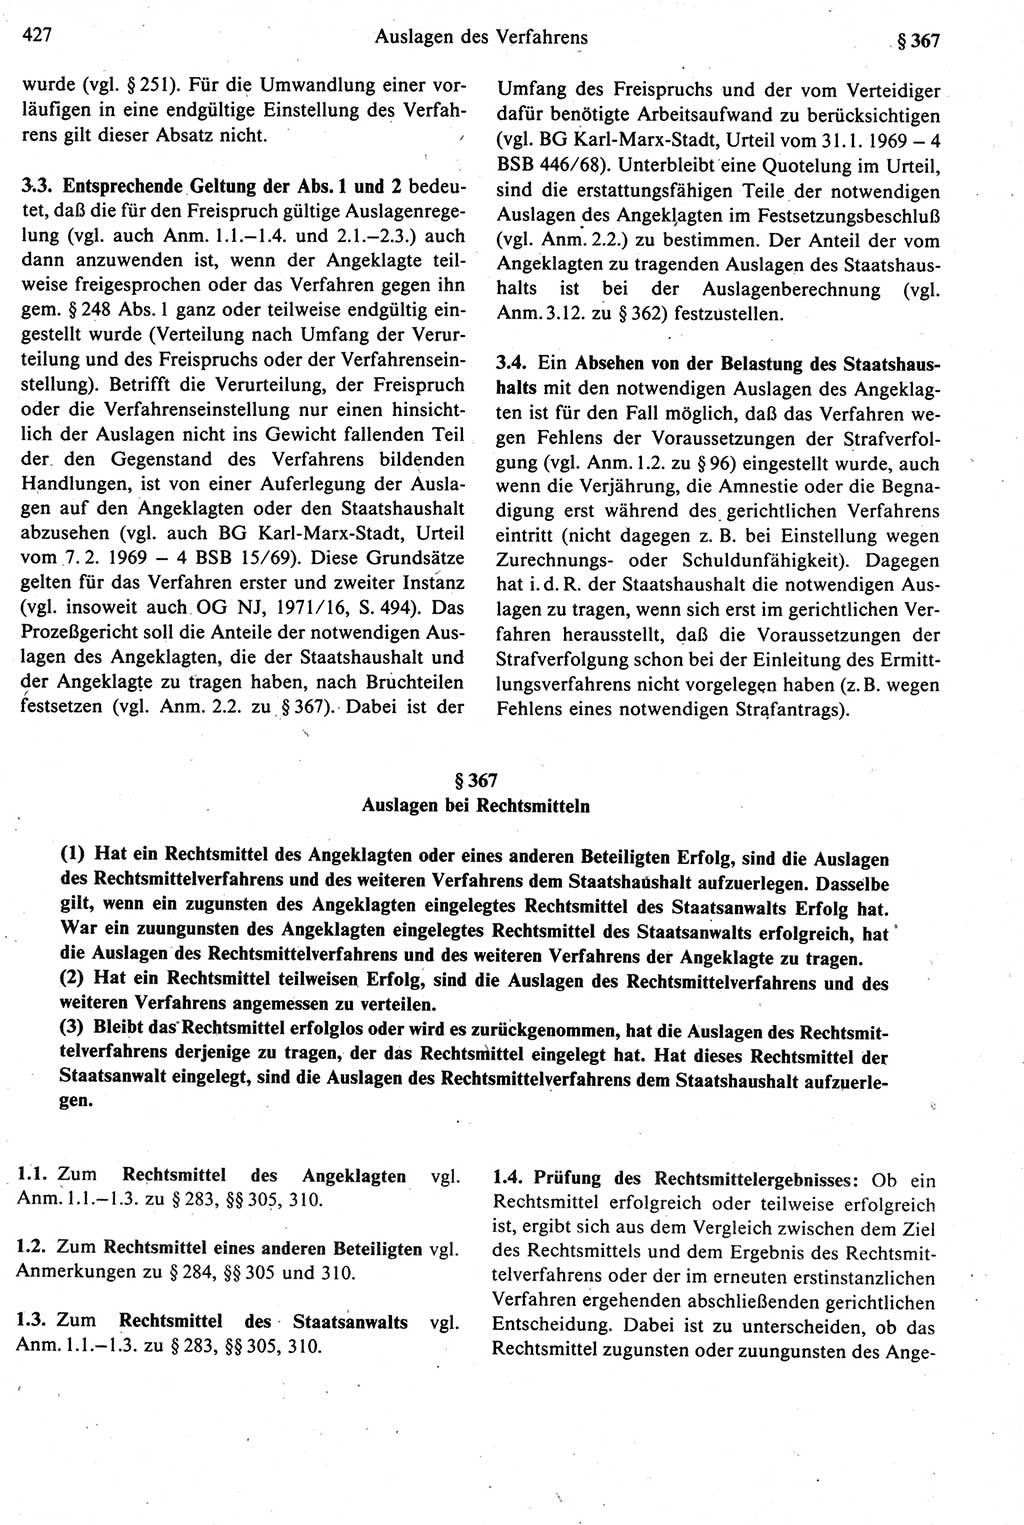 Strafprozeßrecht der DDR [Deutsche Demokratische Republik], Kommentar zur Strafprozeßordnung (StPO) 1987, Seite 427 (Strafprozeßr. DDR Komm. StPO 1987, S. 427)